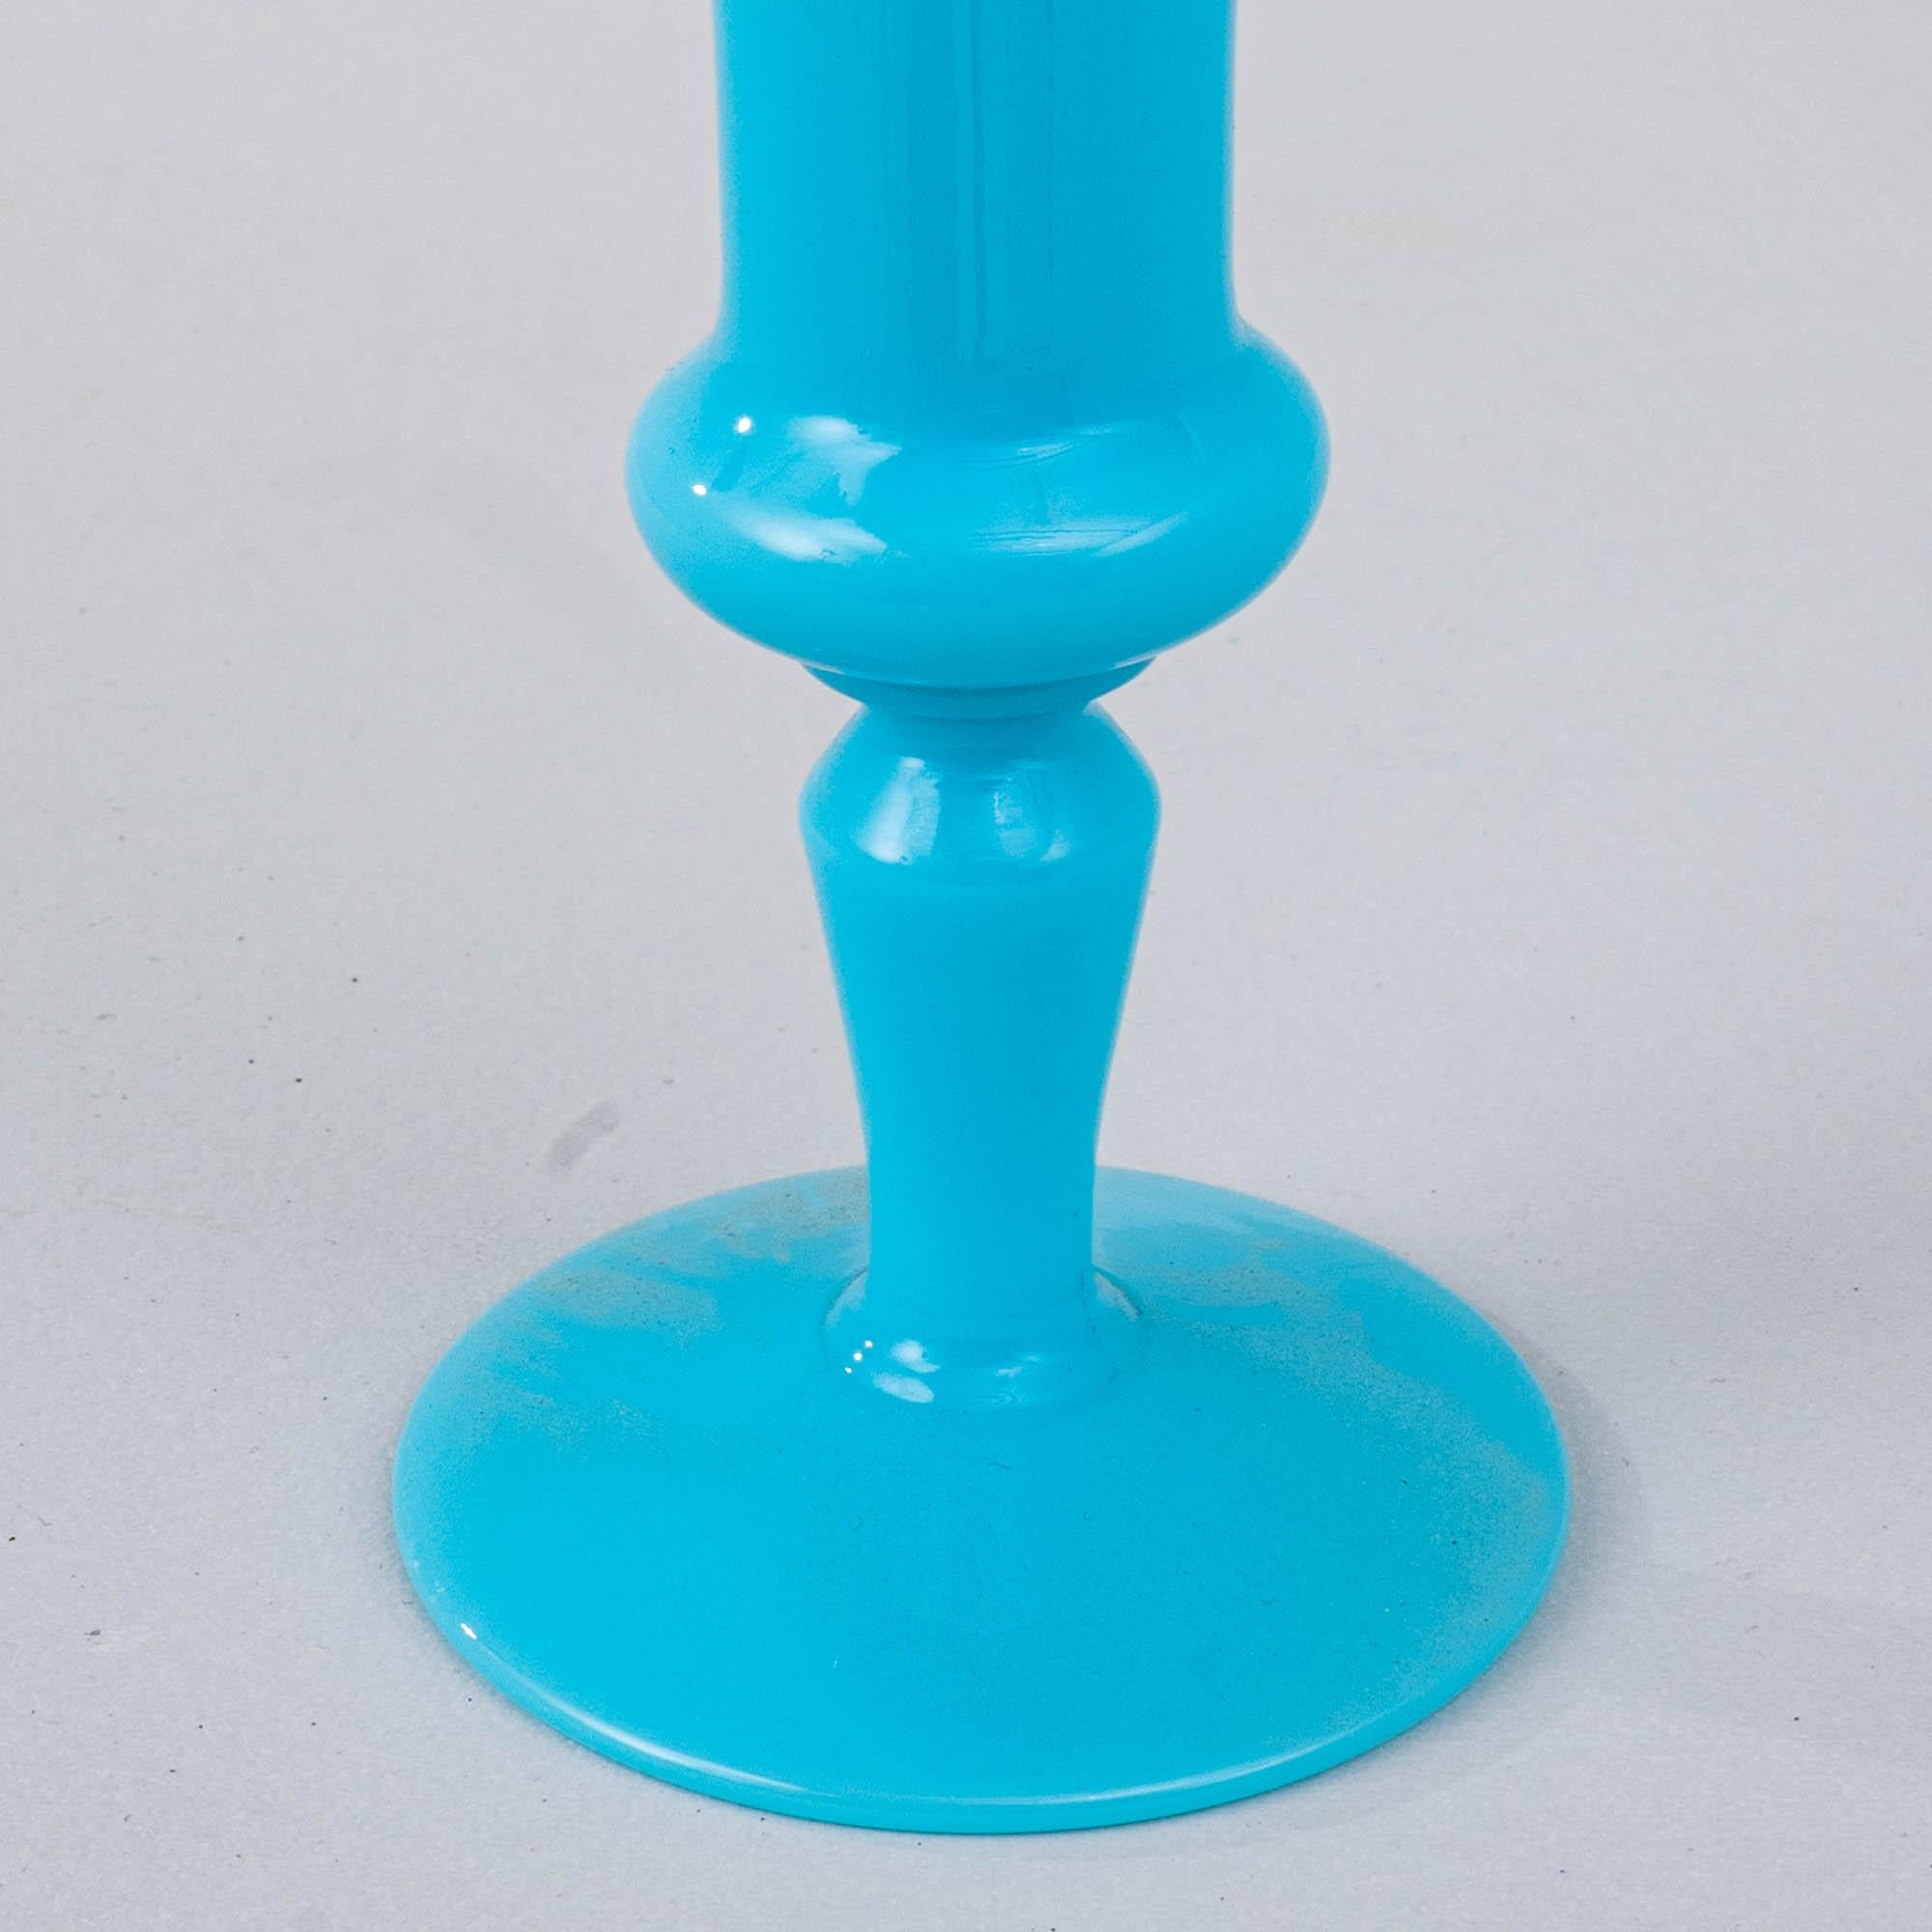 Ce vase en verre bleu italien du 20e siècle évoque l'art de Murano. Soufflé à la main dans l'estimable tradition de Murano, ce vase présente une silhouette élégante qui s'évase gracieusement vers le haut. Les tons azur du verre évoquent un sentiment